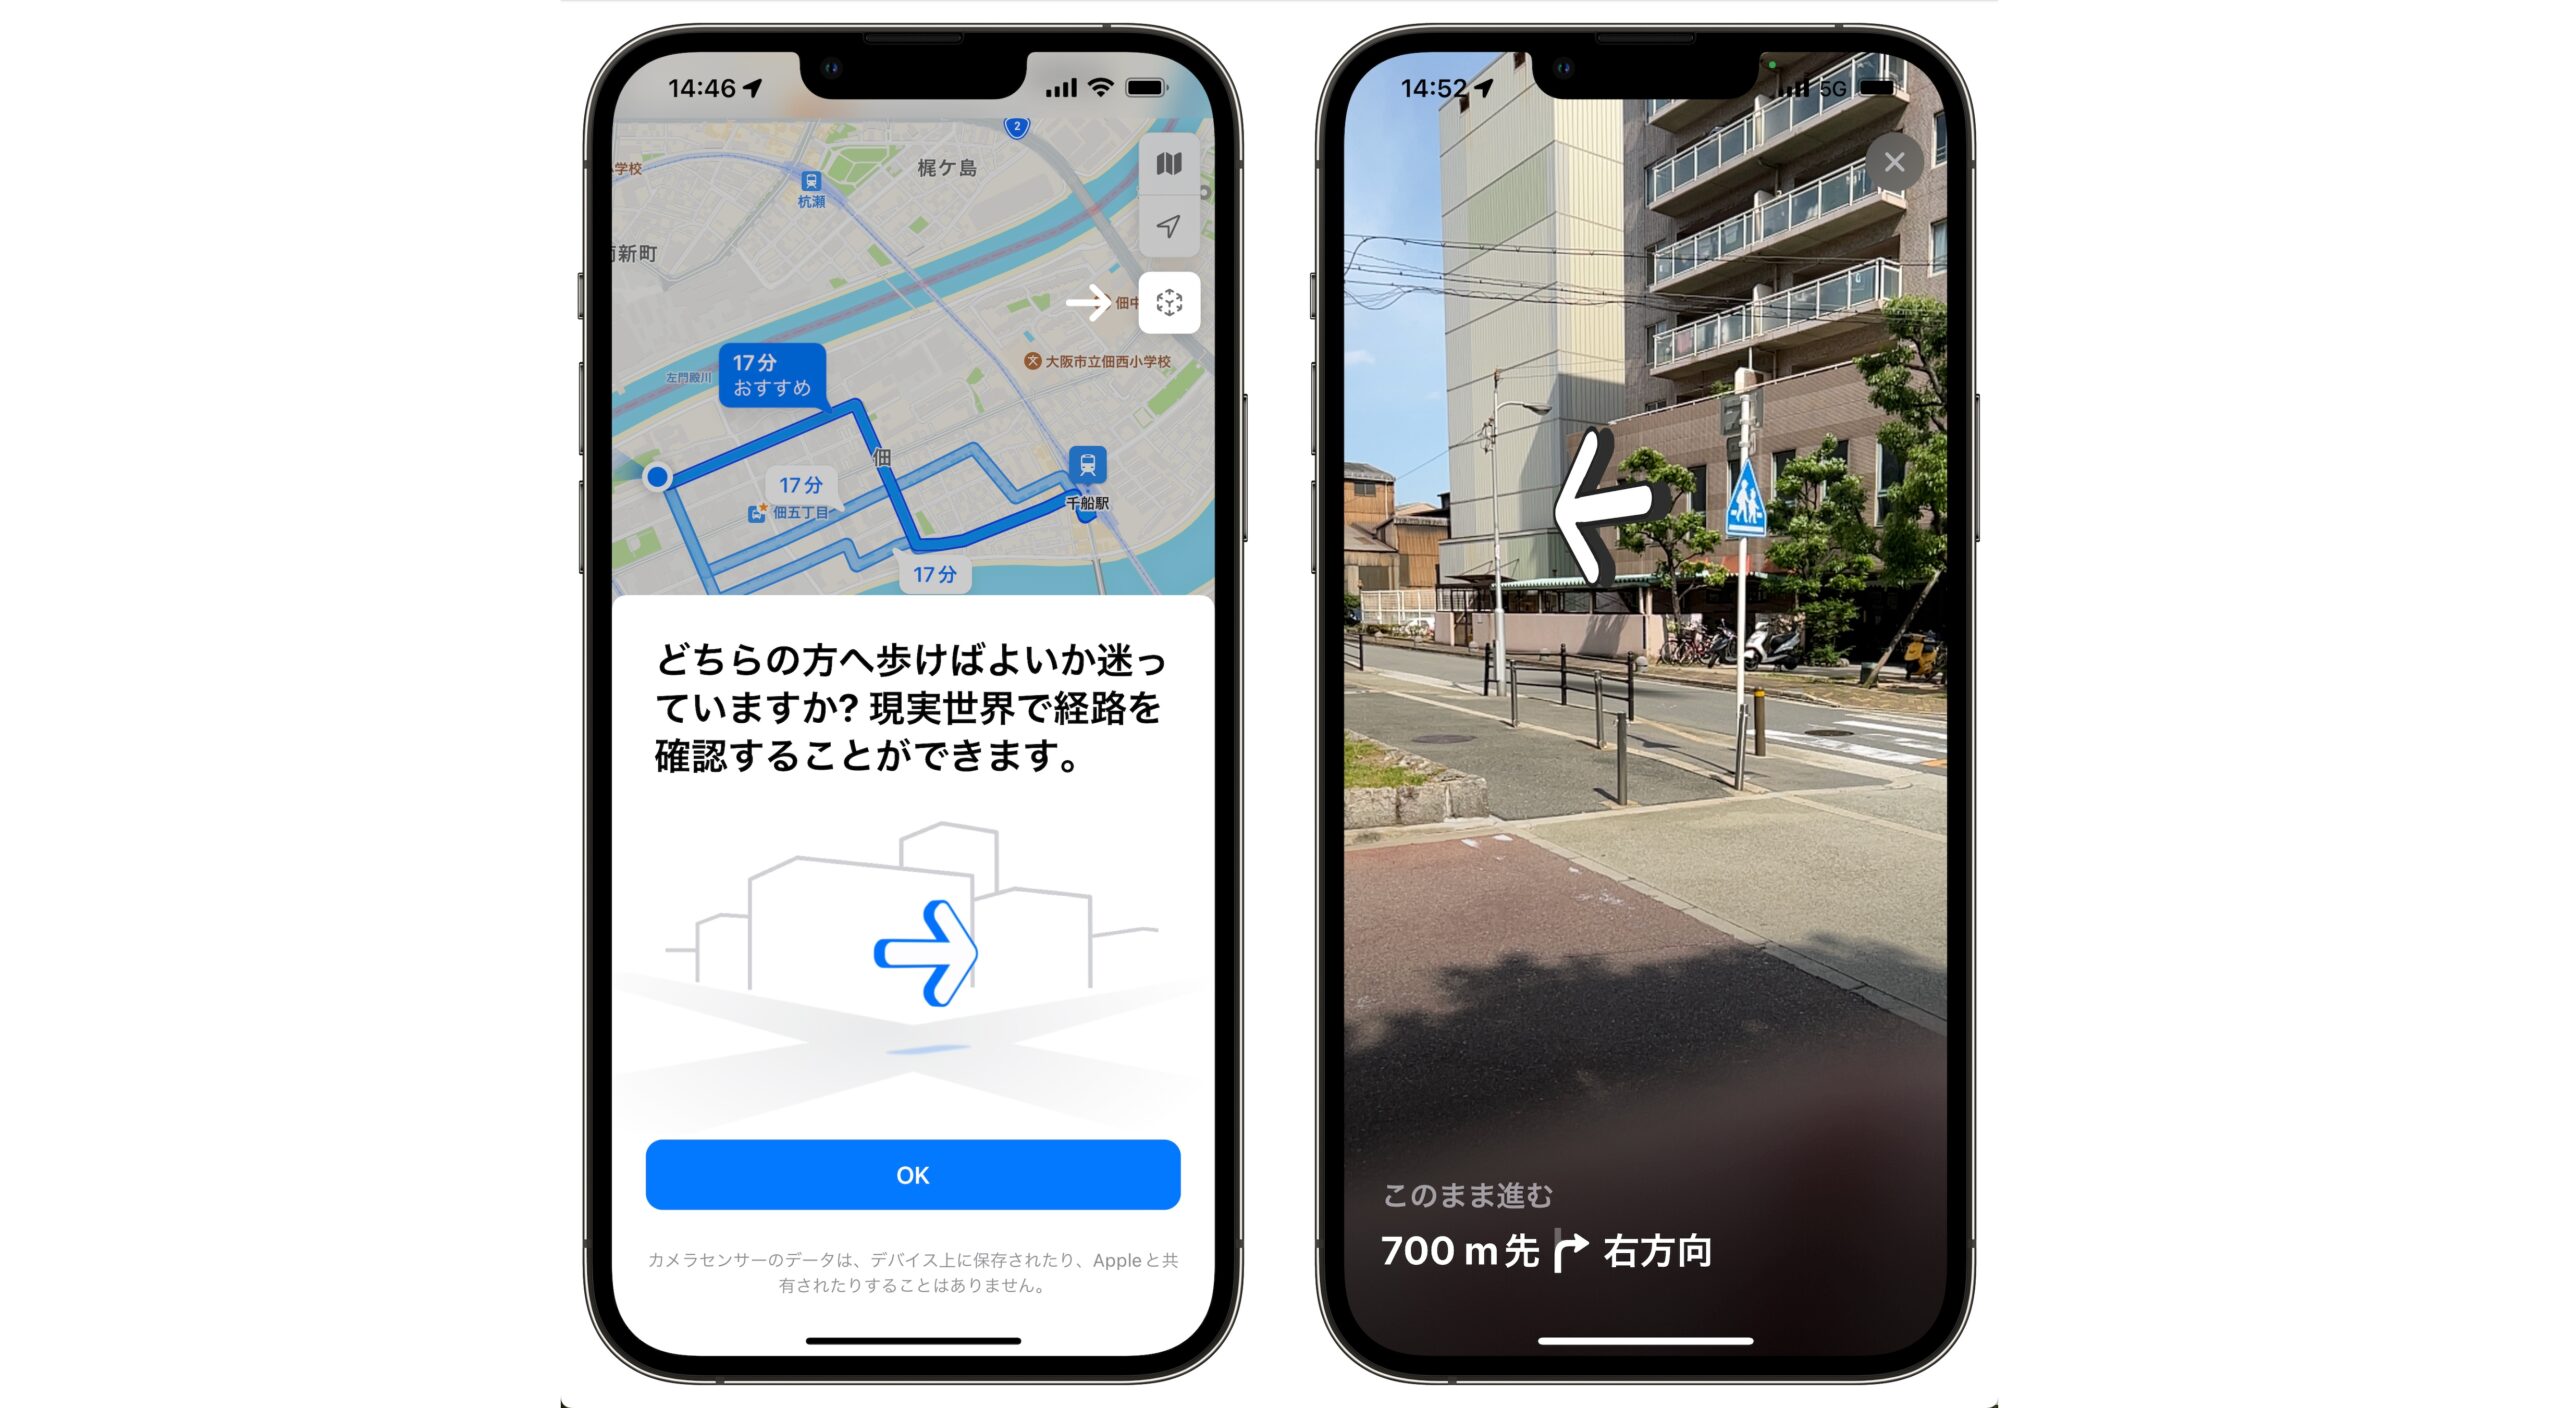 Appleマップ、大阪市内でもAR徒歩案内機能が利用できる